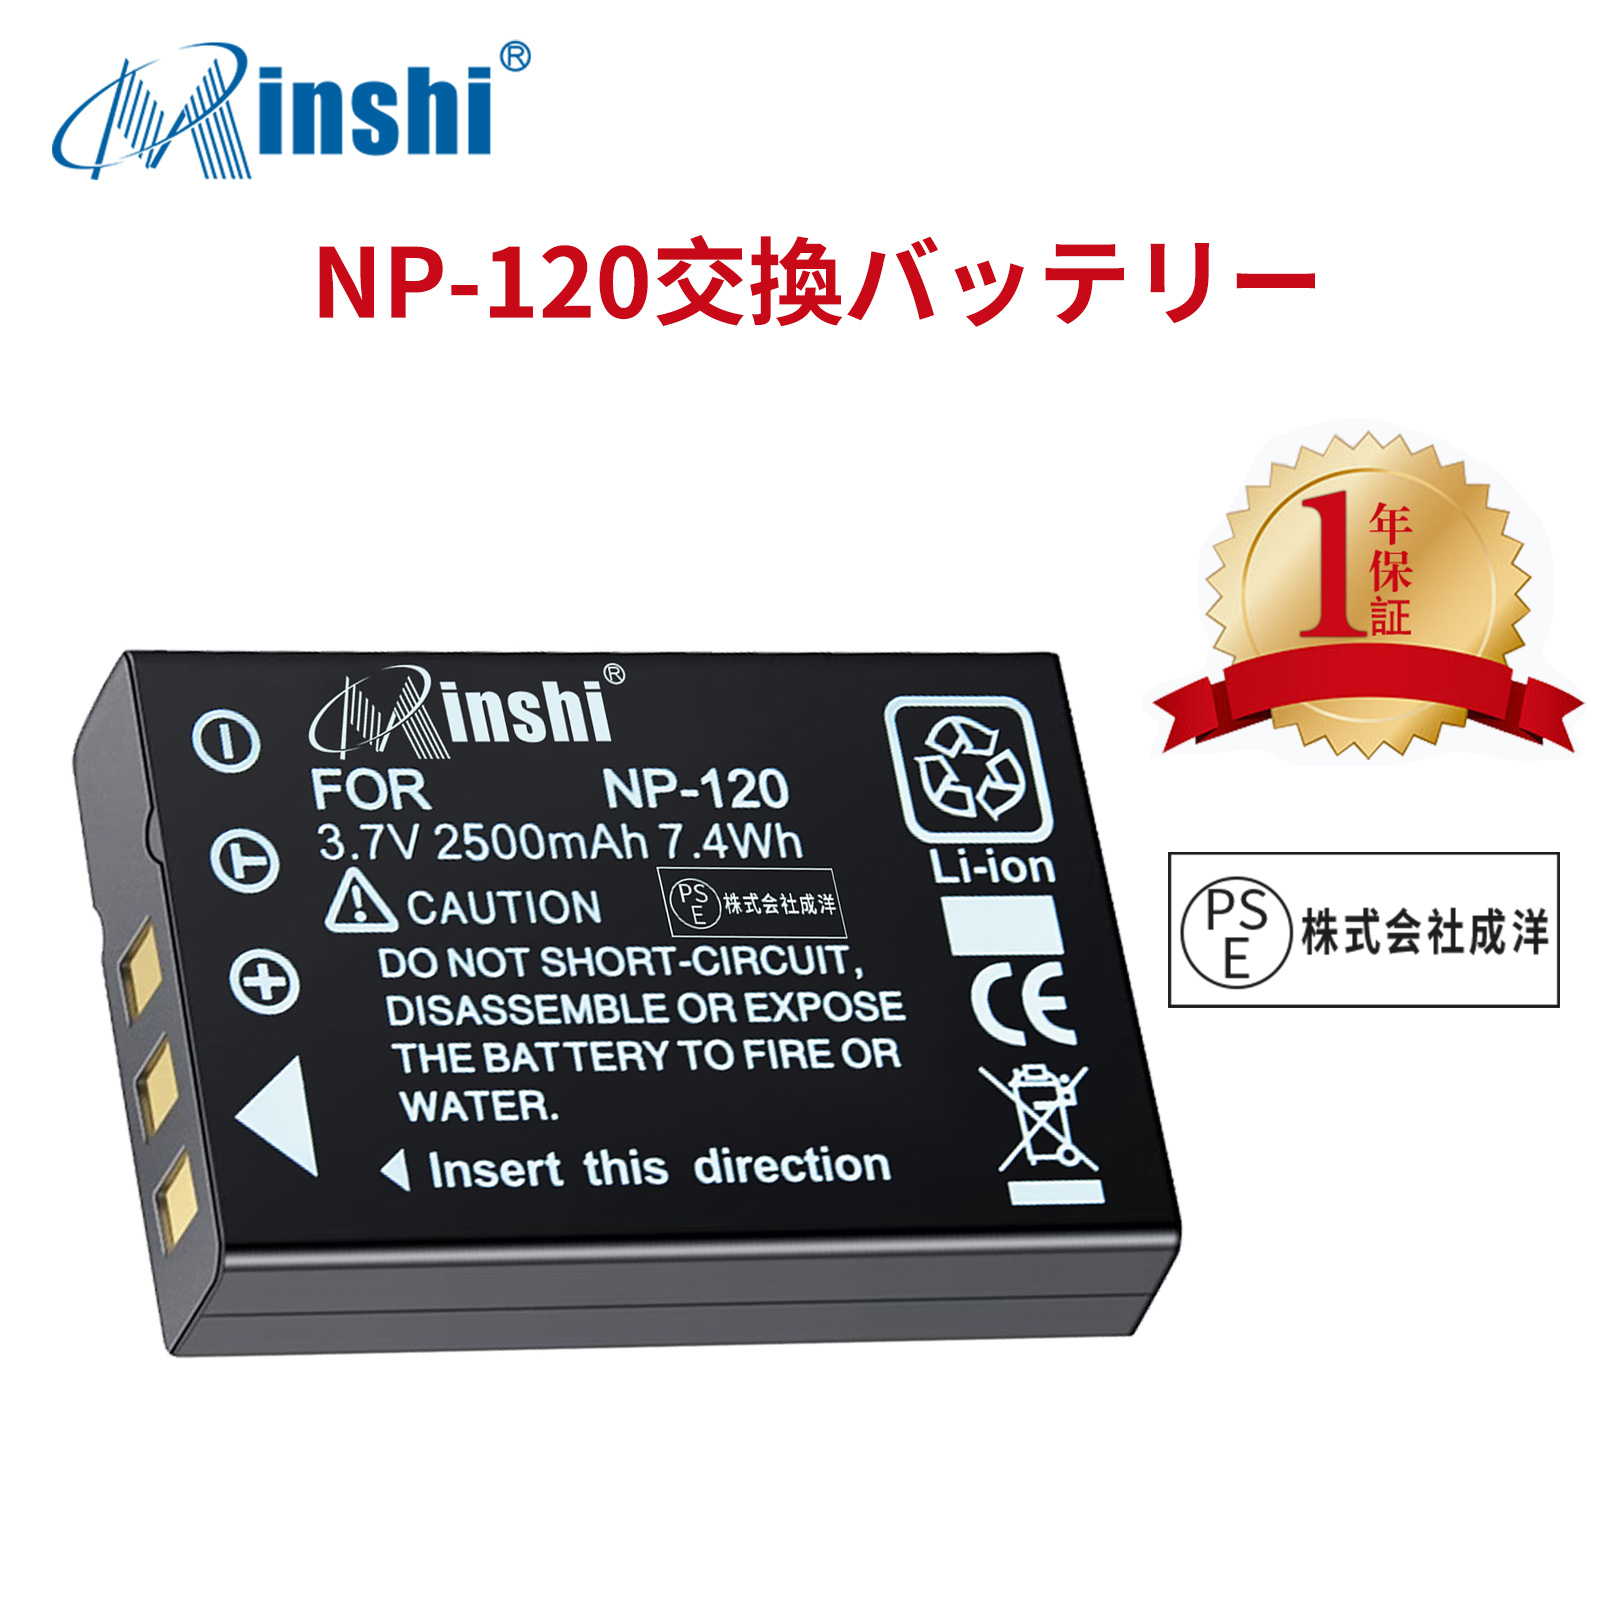 【1年保証】minshi FUJIFILM 450 Optio DB-43 【2500mAh 3.7V】PSE認定済 高品質交換用バッテリー